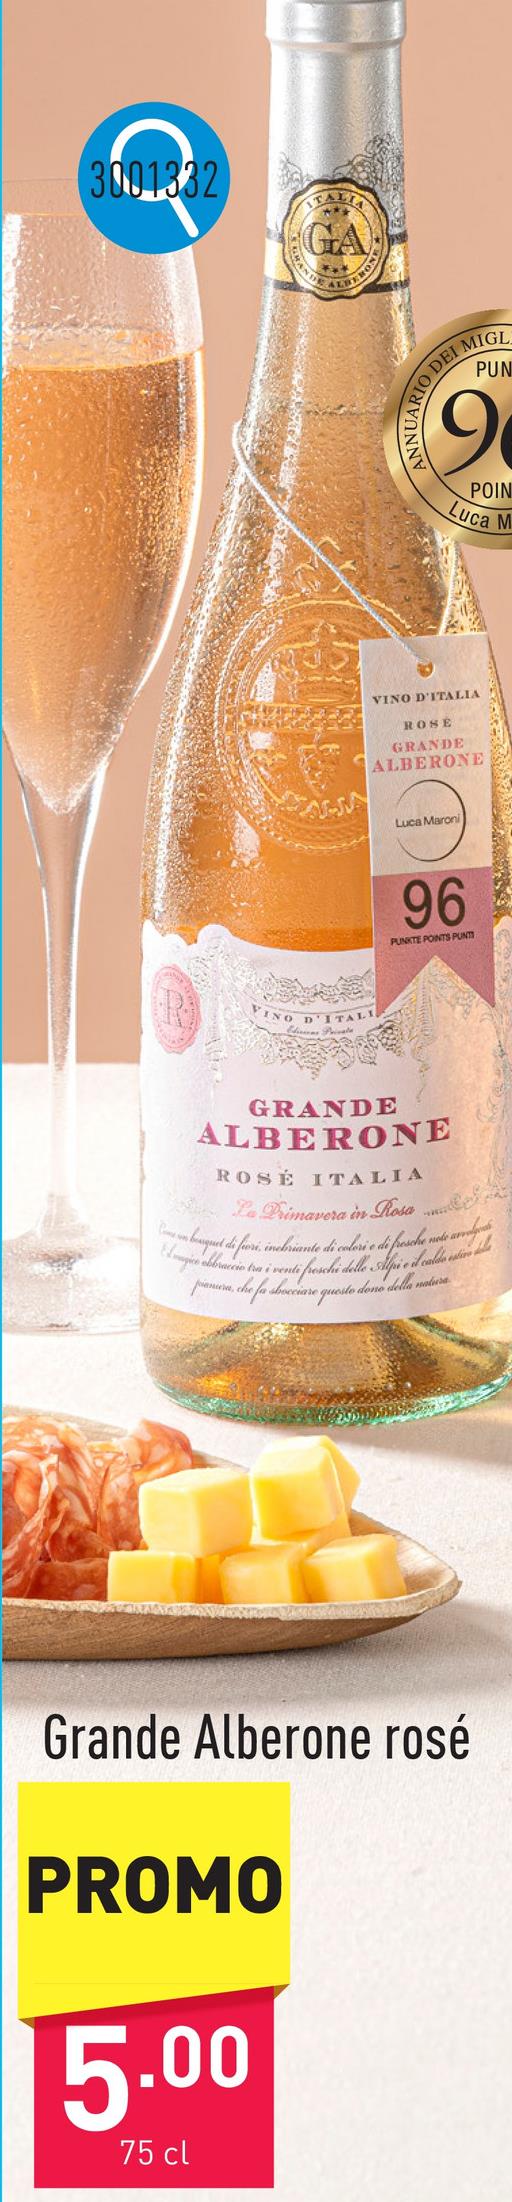 Grande Alberone rosé vin rosé italien fruité et moderne, au bouquet de fruits mûrs et de fleurs, bouche fraîche et vivacesuggestion : à l'apéritif, pour accompagner pâtes, salades ou plats légers à base de fruits de mer, de poisson ou de volaillemillésime : 2023